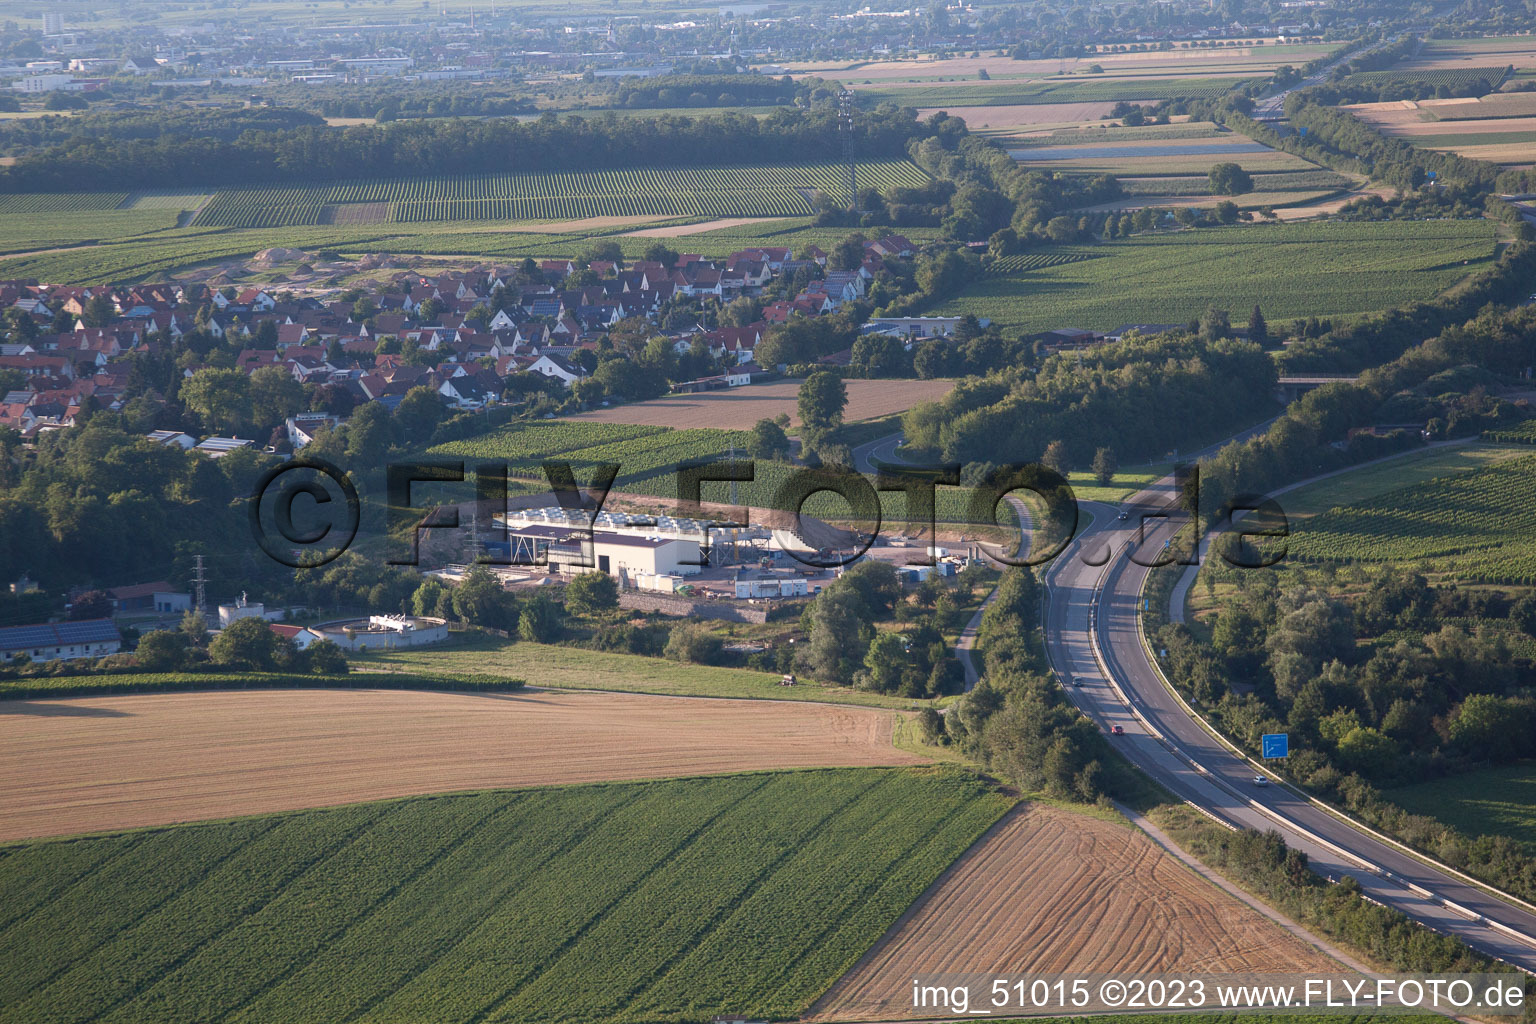 Luftbild von Geothermieanlage der Pfalzwerke geofuture GmbH bei Insheim an der A65 im Bundesland Rheinland-Pfalz, Deutschland